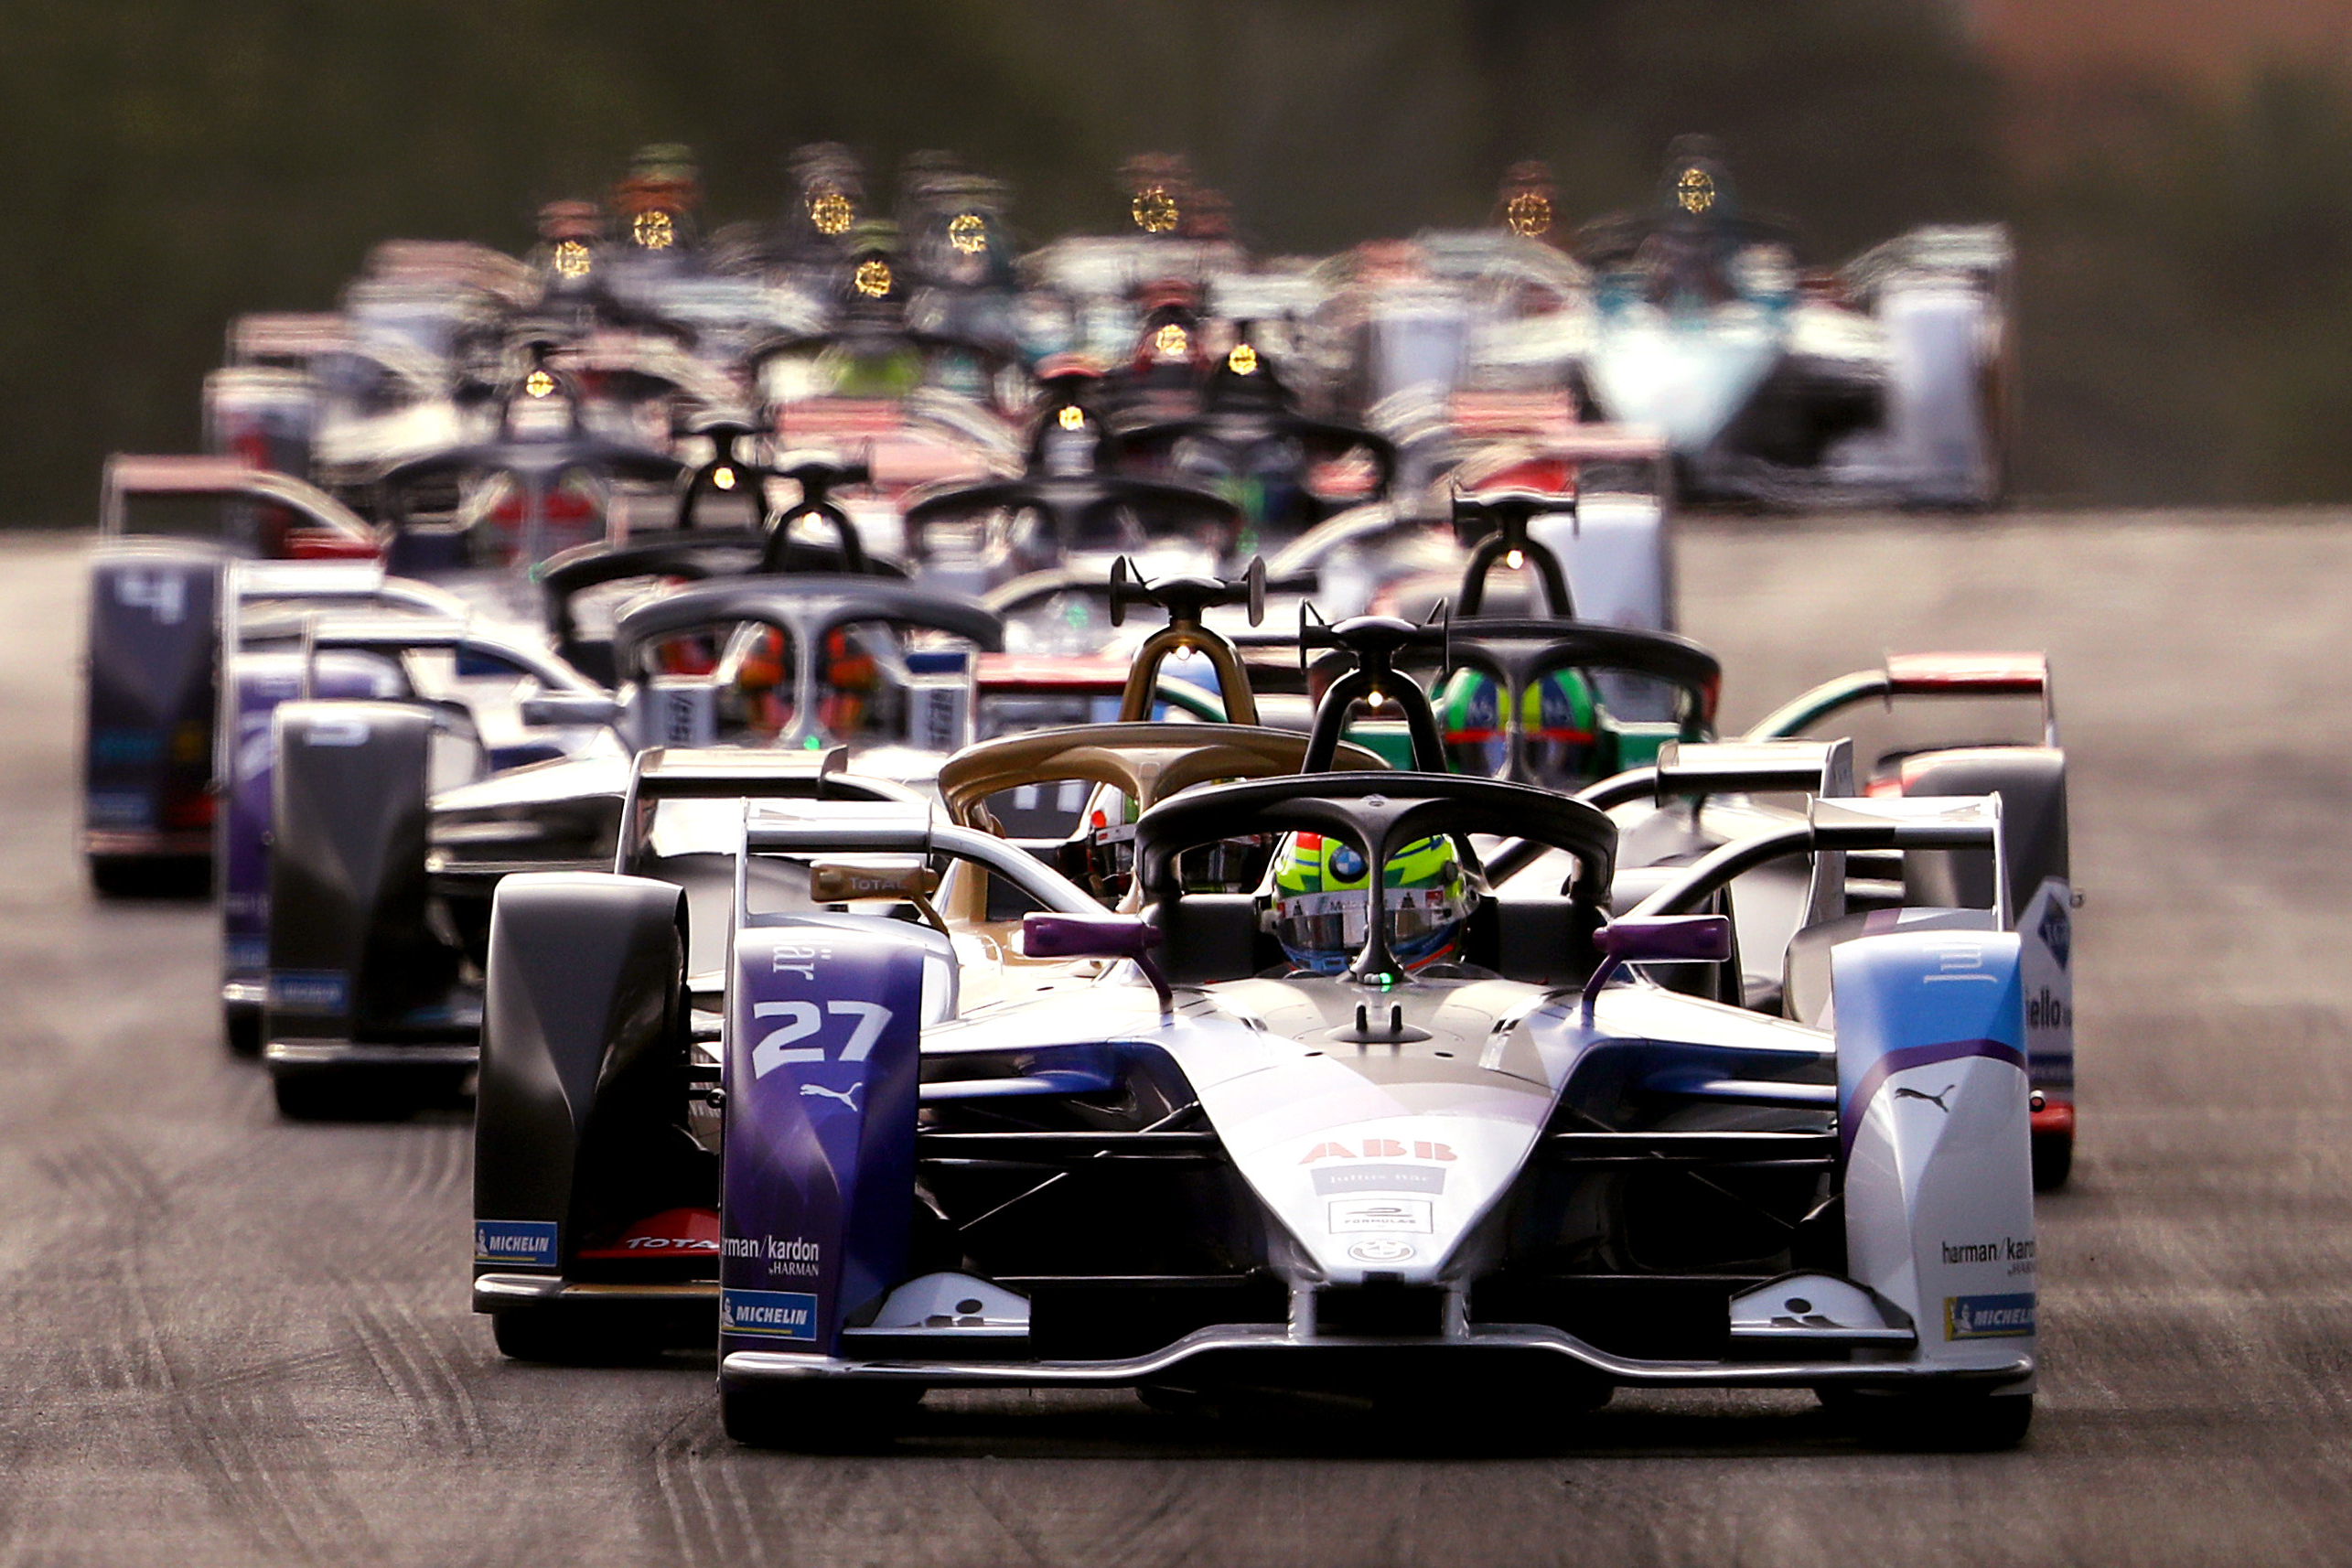 Fórmula E: por que há uma corrida só de carros elétricos